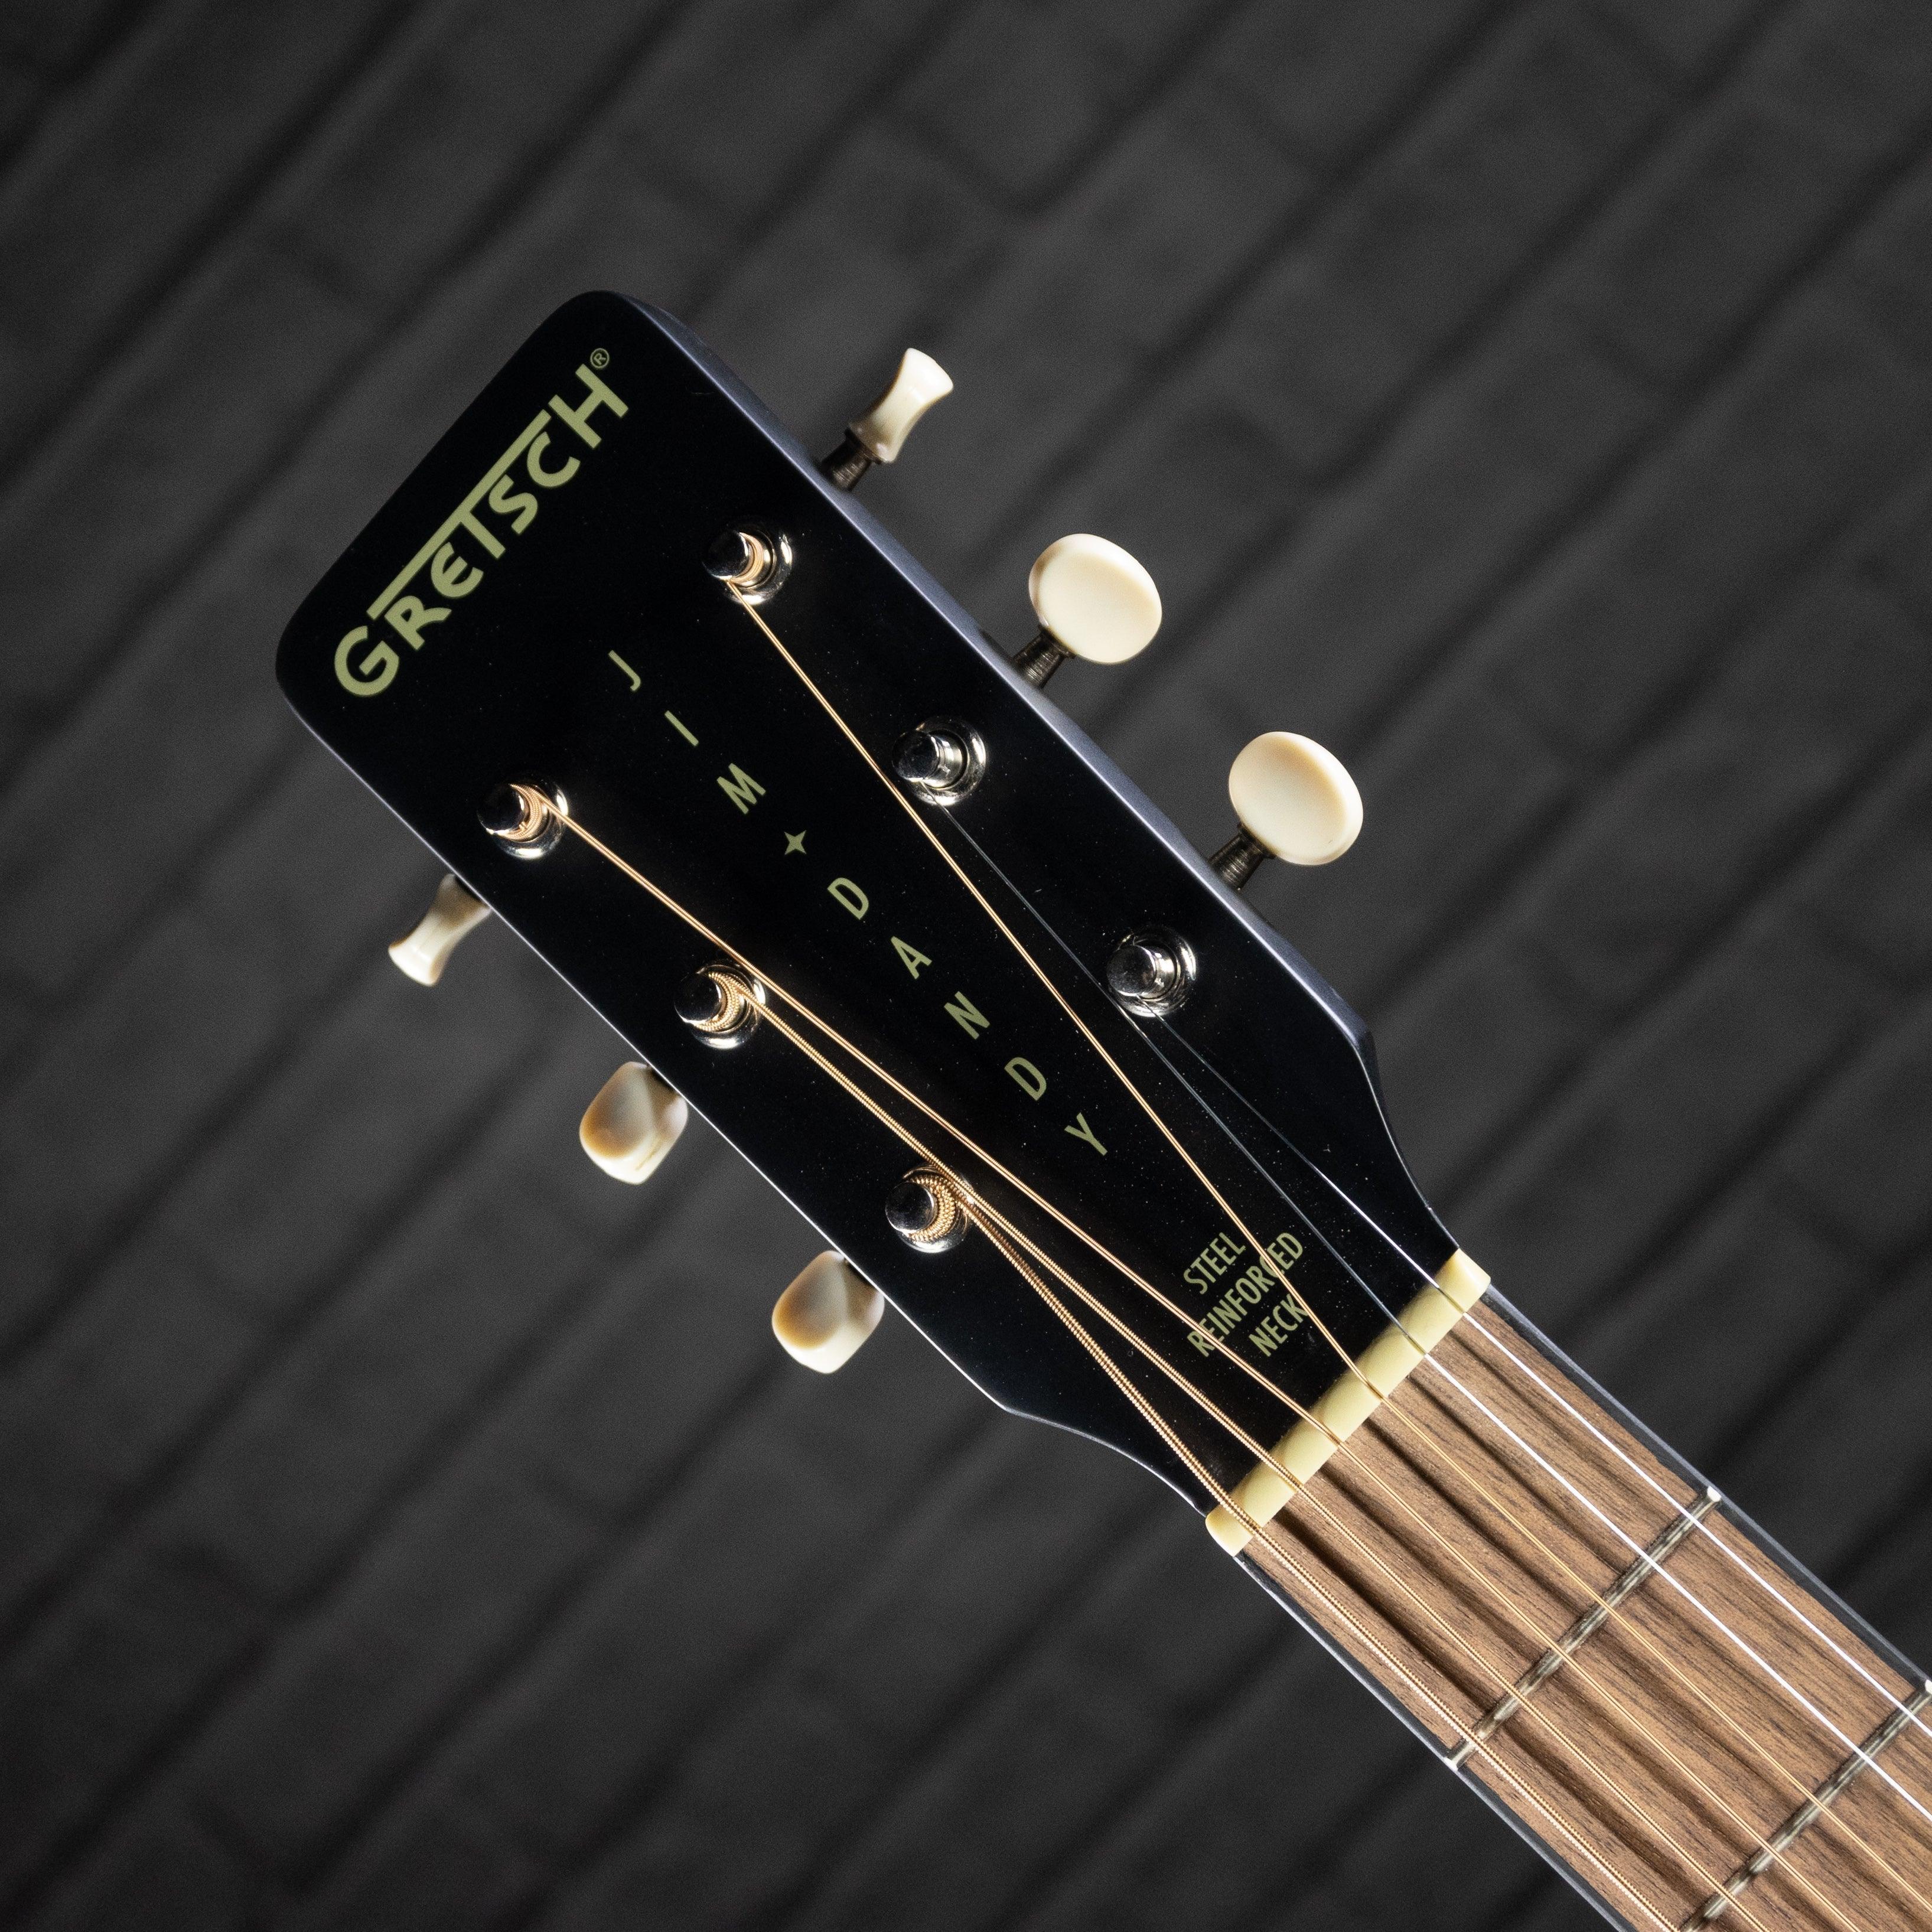 Gretsch G9500 Jim Dandy Acoustic Guitar (Two Color Sunburst) - Impulse Music Co.